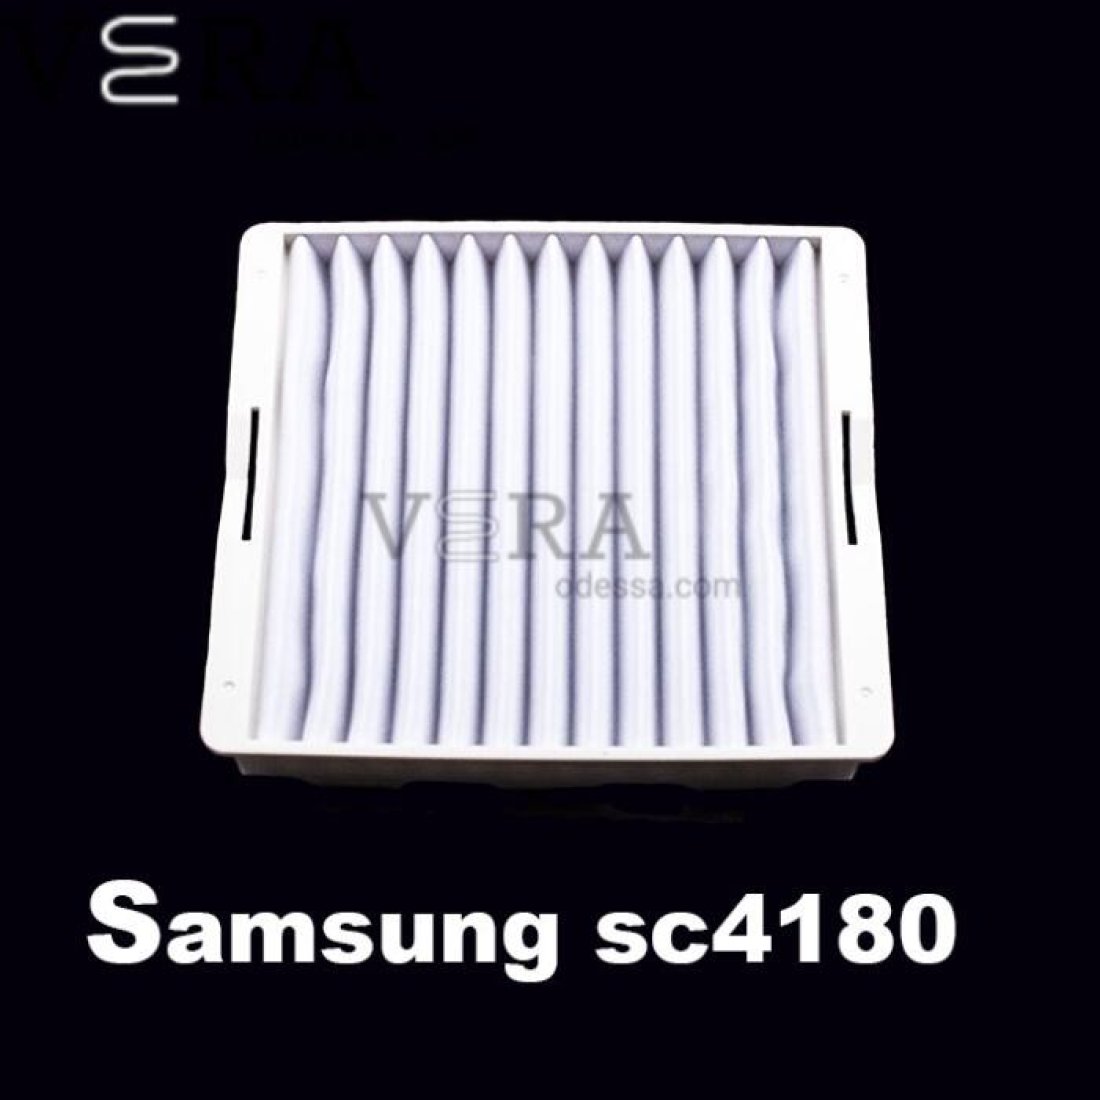 Купить фильтр для пылесоса Samsung sc4180 оптом, фотография 2